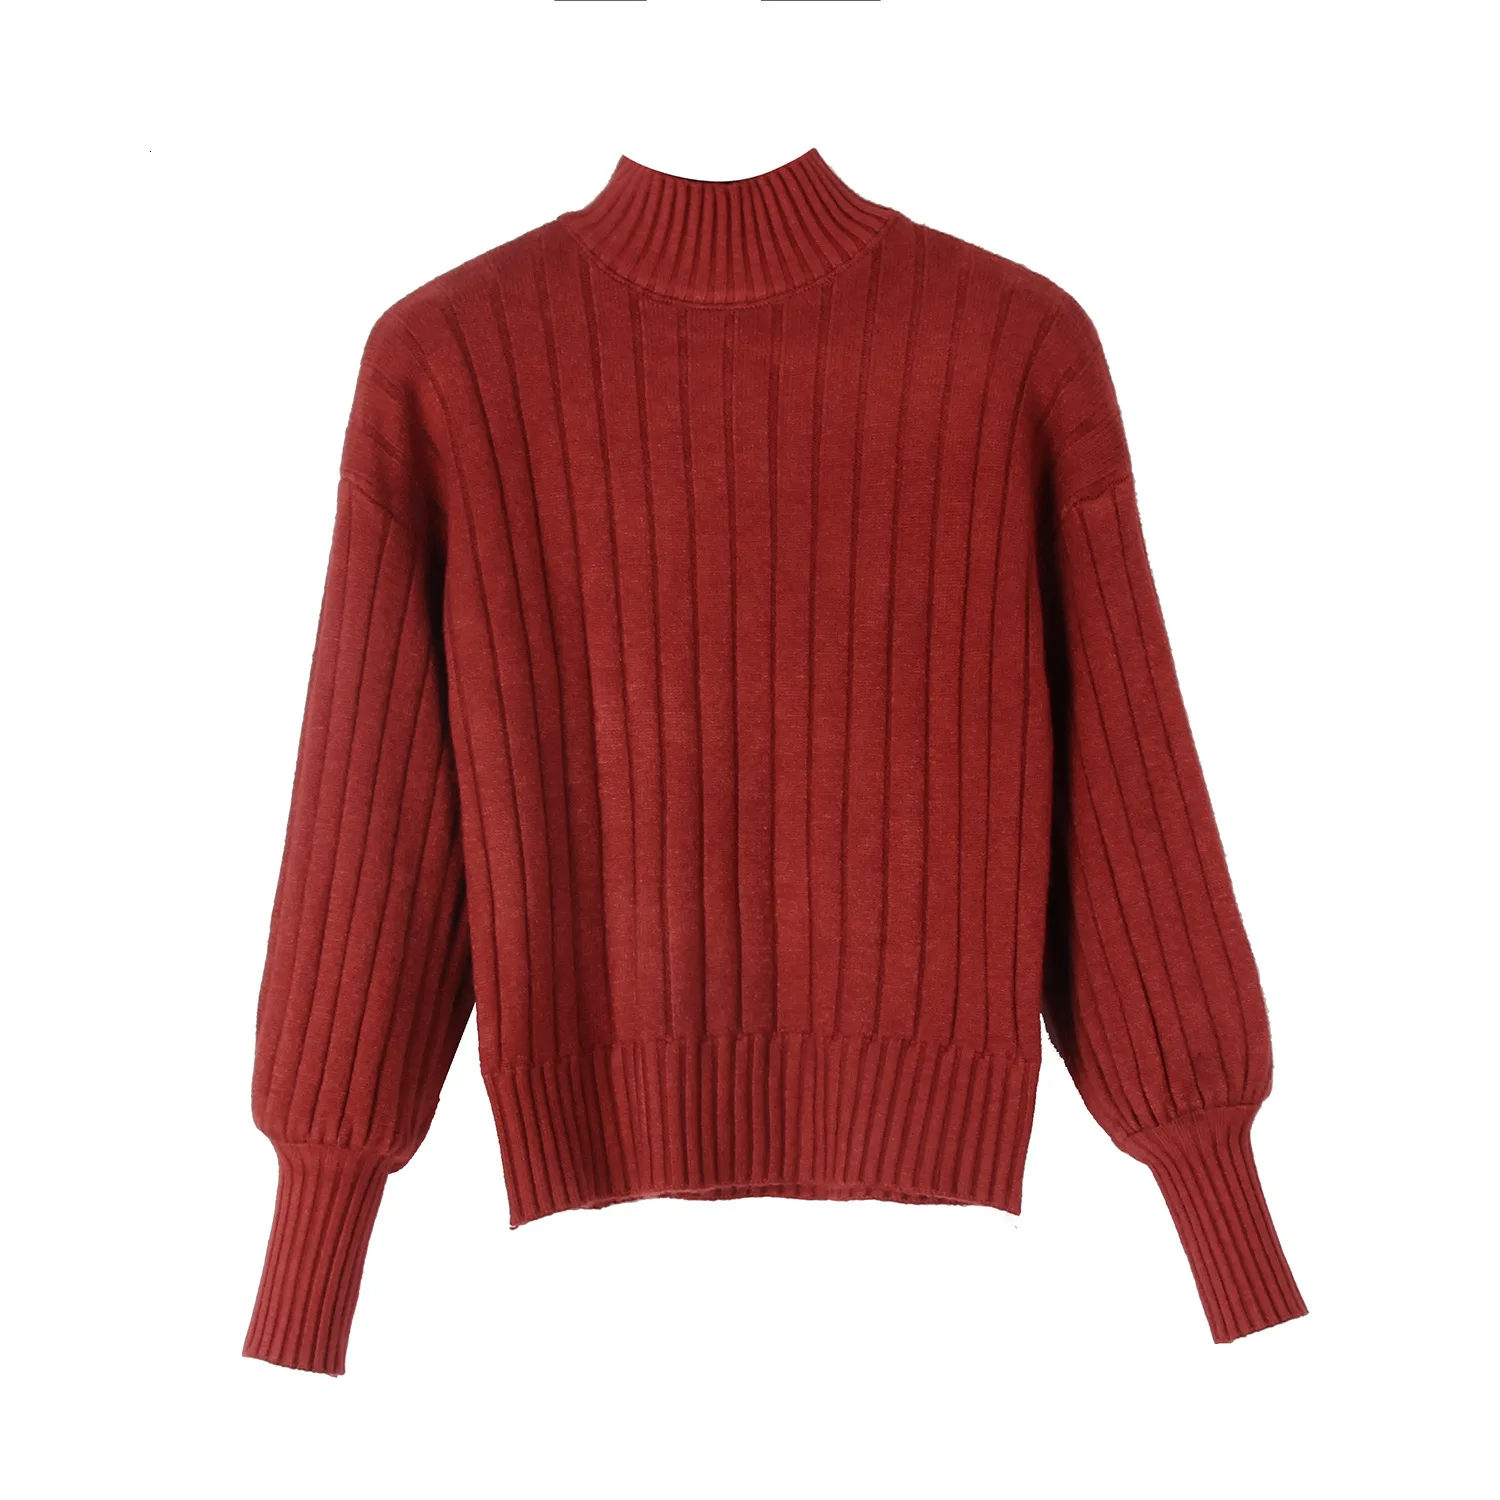 Зимний вязаный свитер с высоким воротом для женщин осенний Повседневный вязаный пуловер с длинным рукавом Эластичный свитер Топы ropa mujer - Цвет: Burgundy